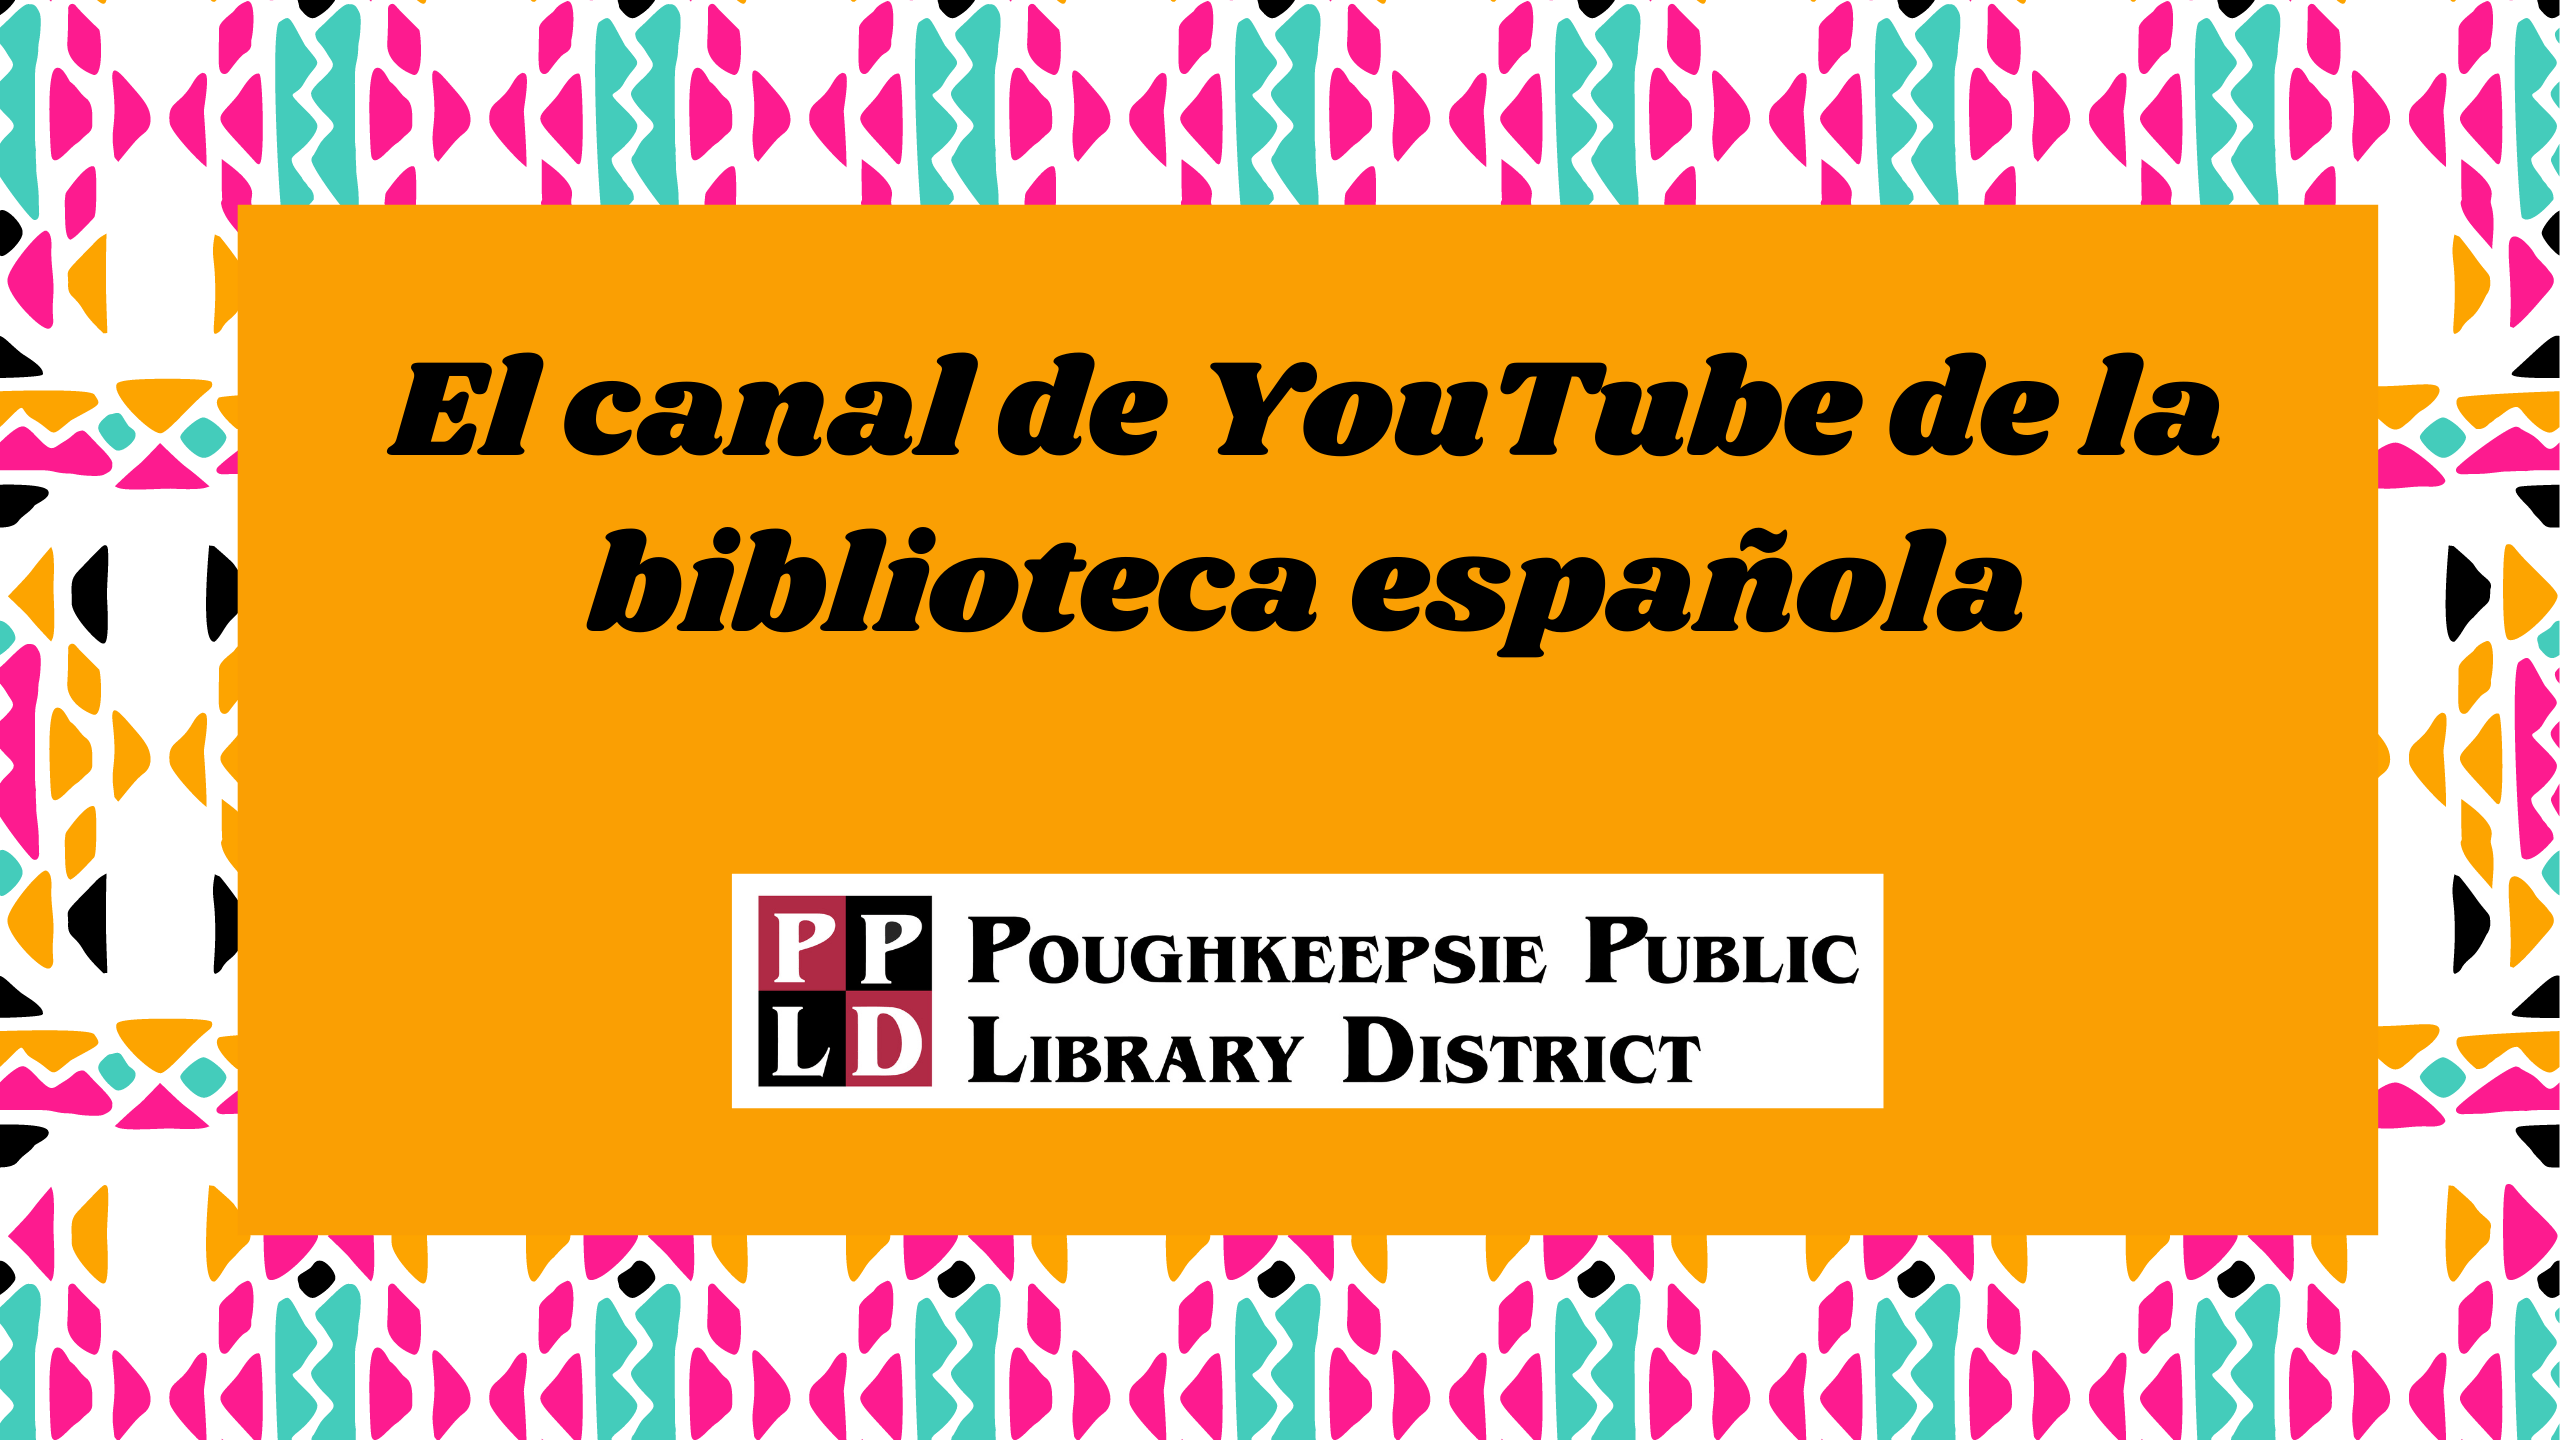 El canal de YouTube de la biblioteca española